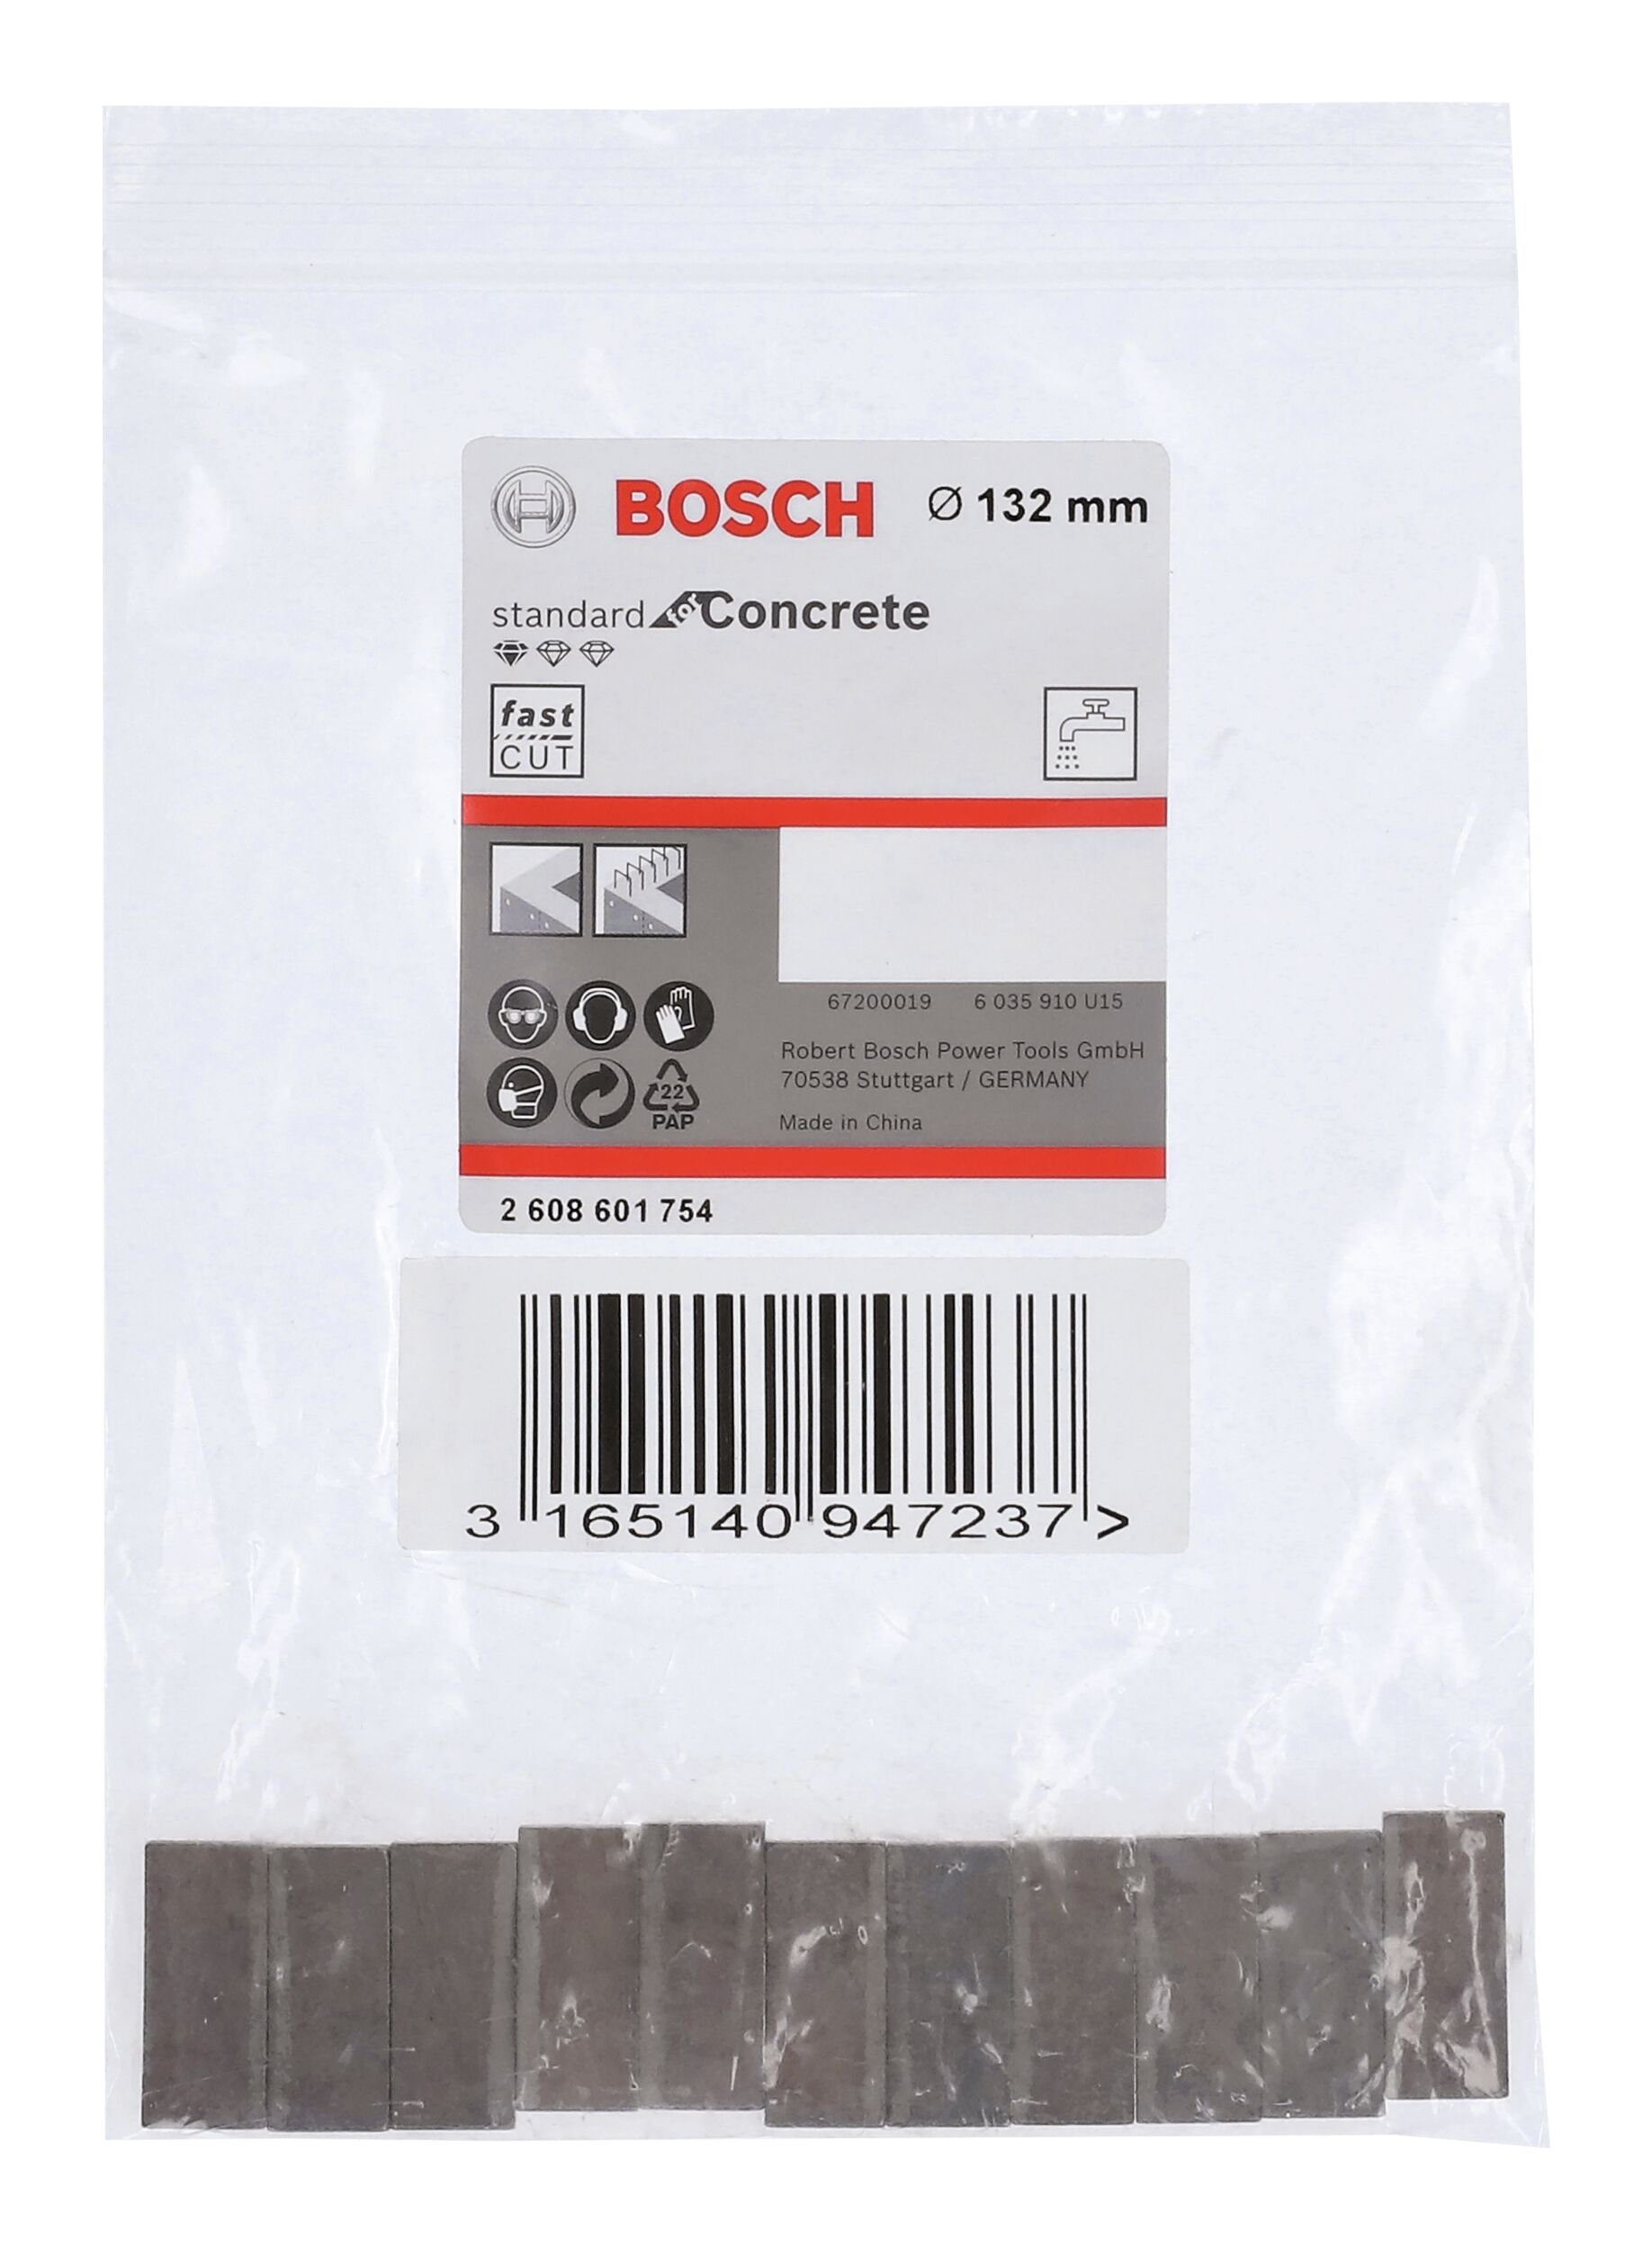 f. - BOSCH Segmente 11 Concrete 10 Diamantbohrkrone Bohrkrone, for Standard Segmente mm